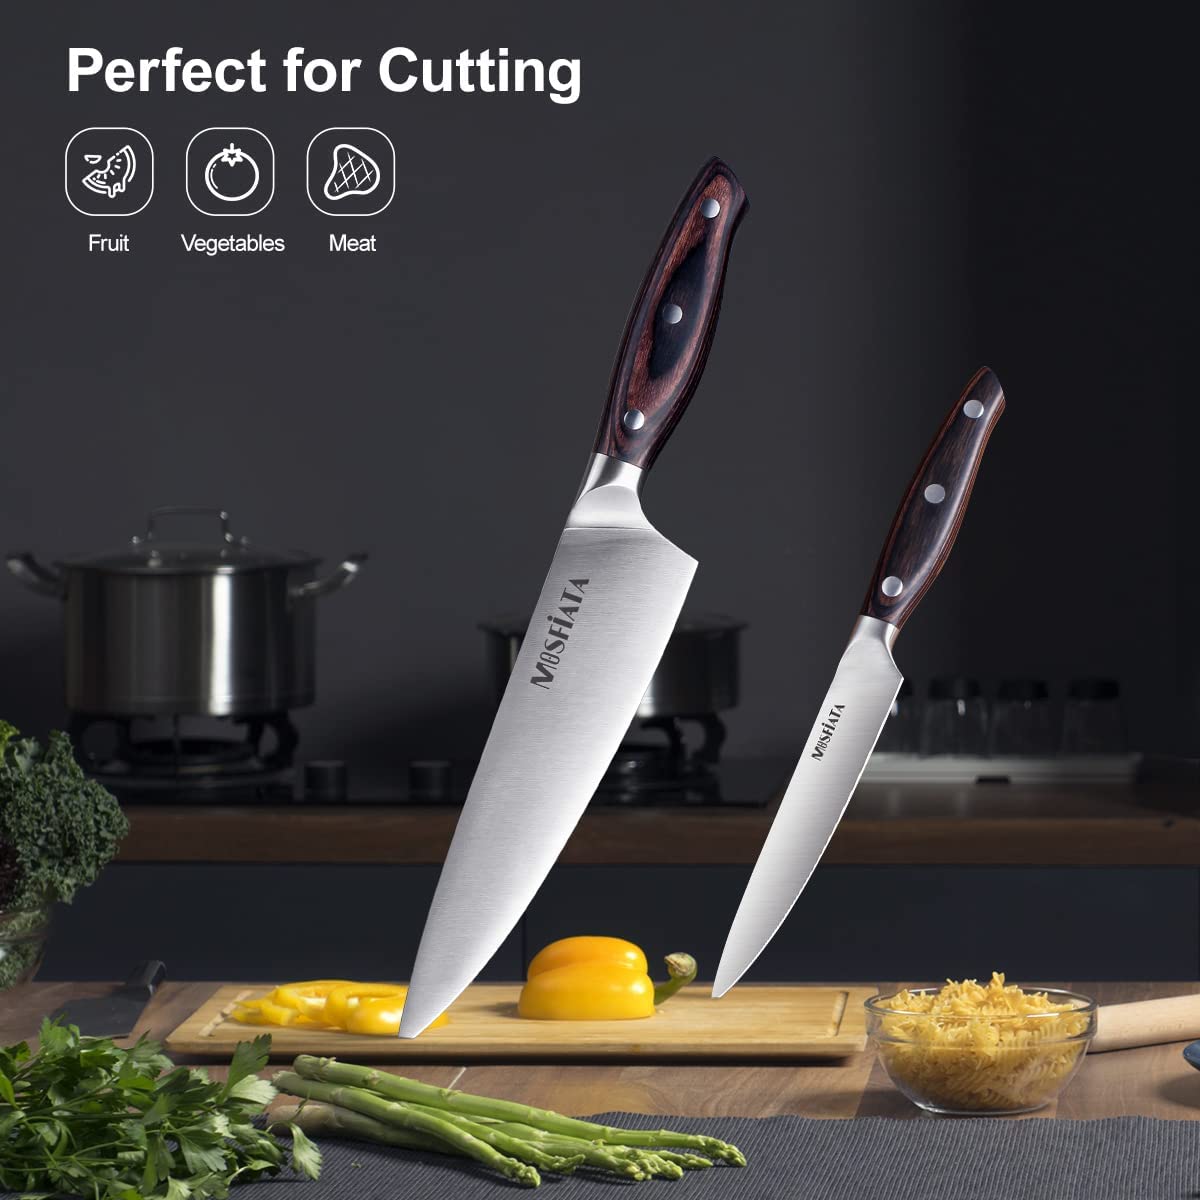 Kitchen Knives – mosfiata